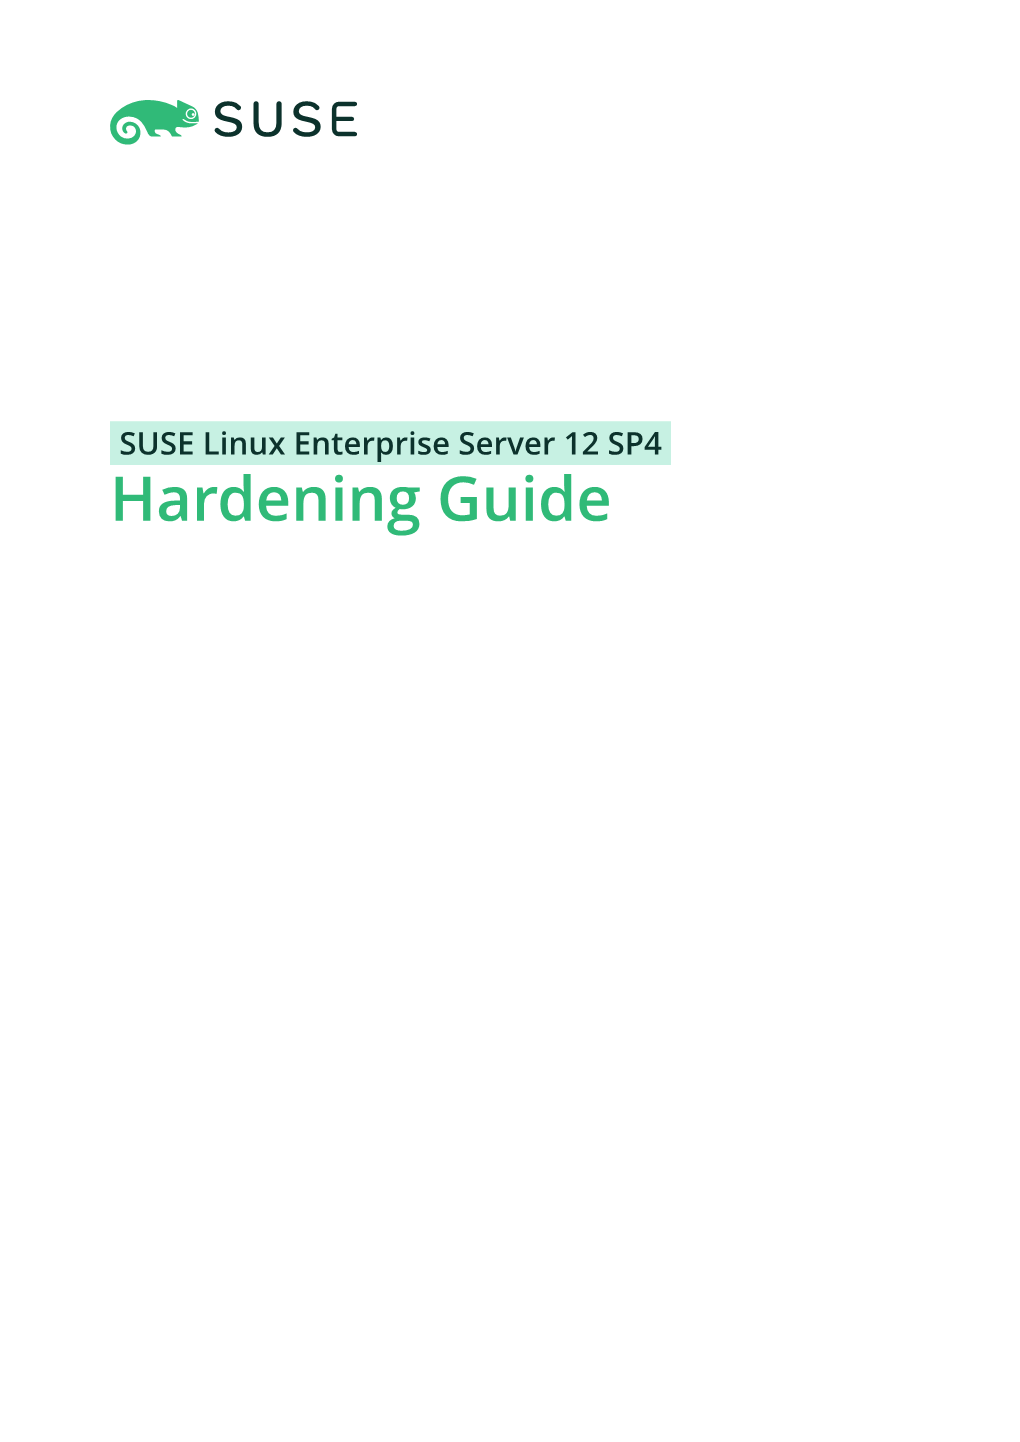 Hardening Guide Hardening Guide SUSE Linux Enterprise Server 12 SP4